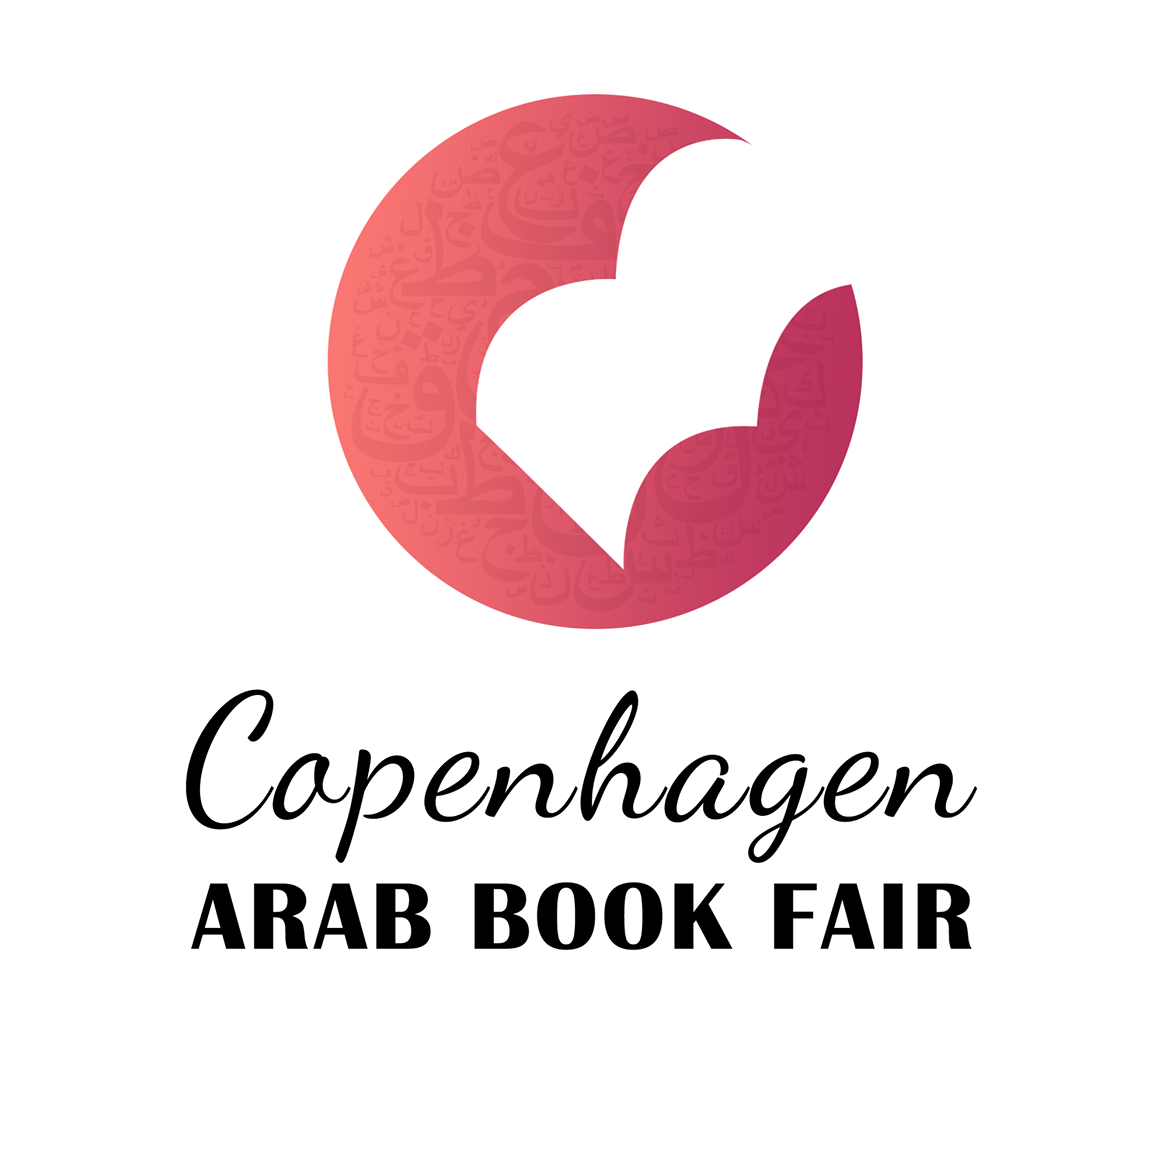 المركز يشارك في الدورة الثانية من معرض كوبنهاجن الدولي للكتاب